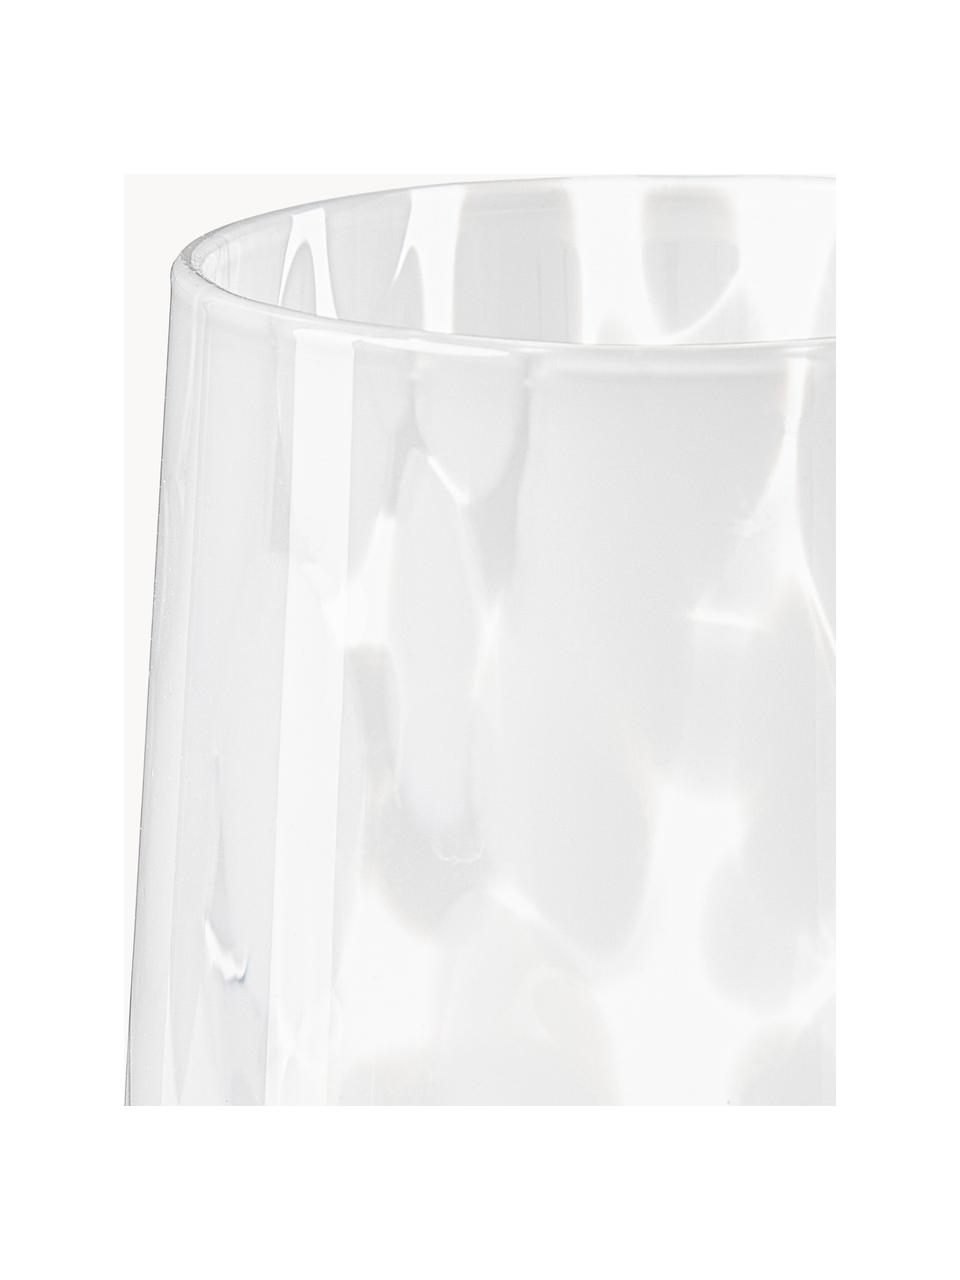 Sada ručně vyrobených sklenic na vodu s puntíkovaným vzorem Oakley, 4 díly, Sklo, Bílá, transparentní, Ø 9 cm, V 10 cm, 370 ml